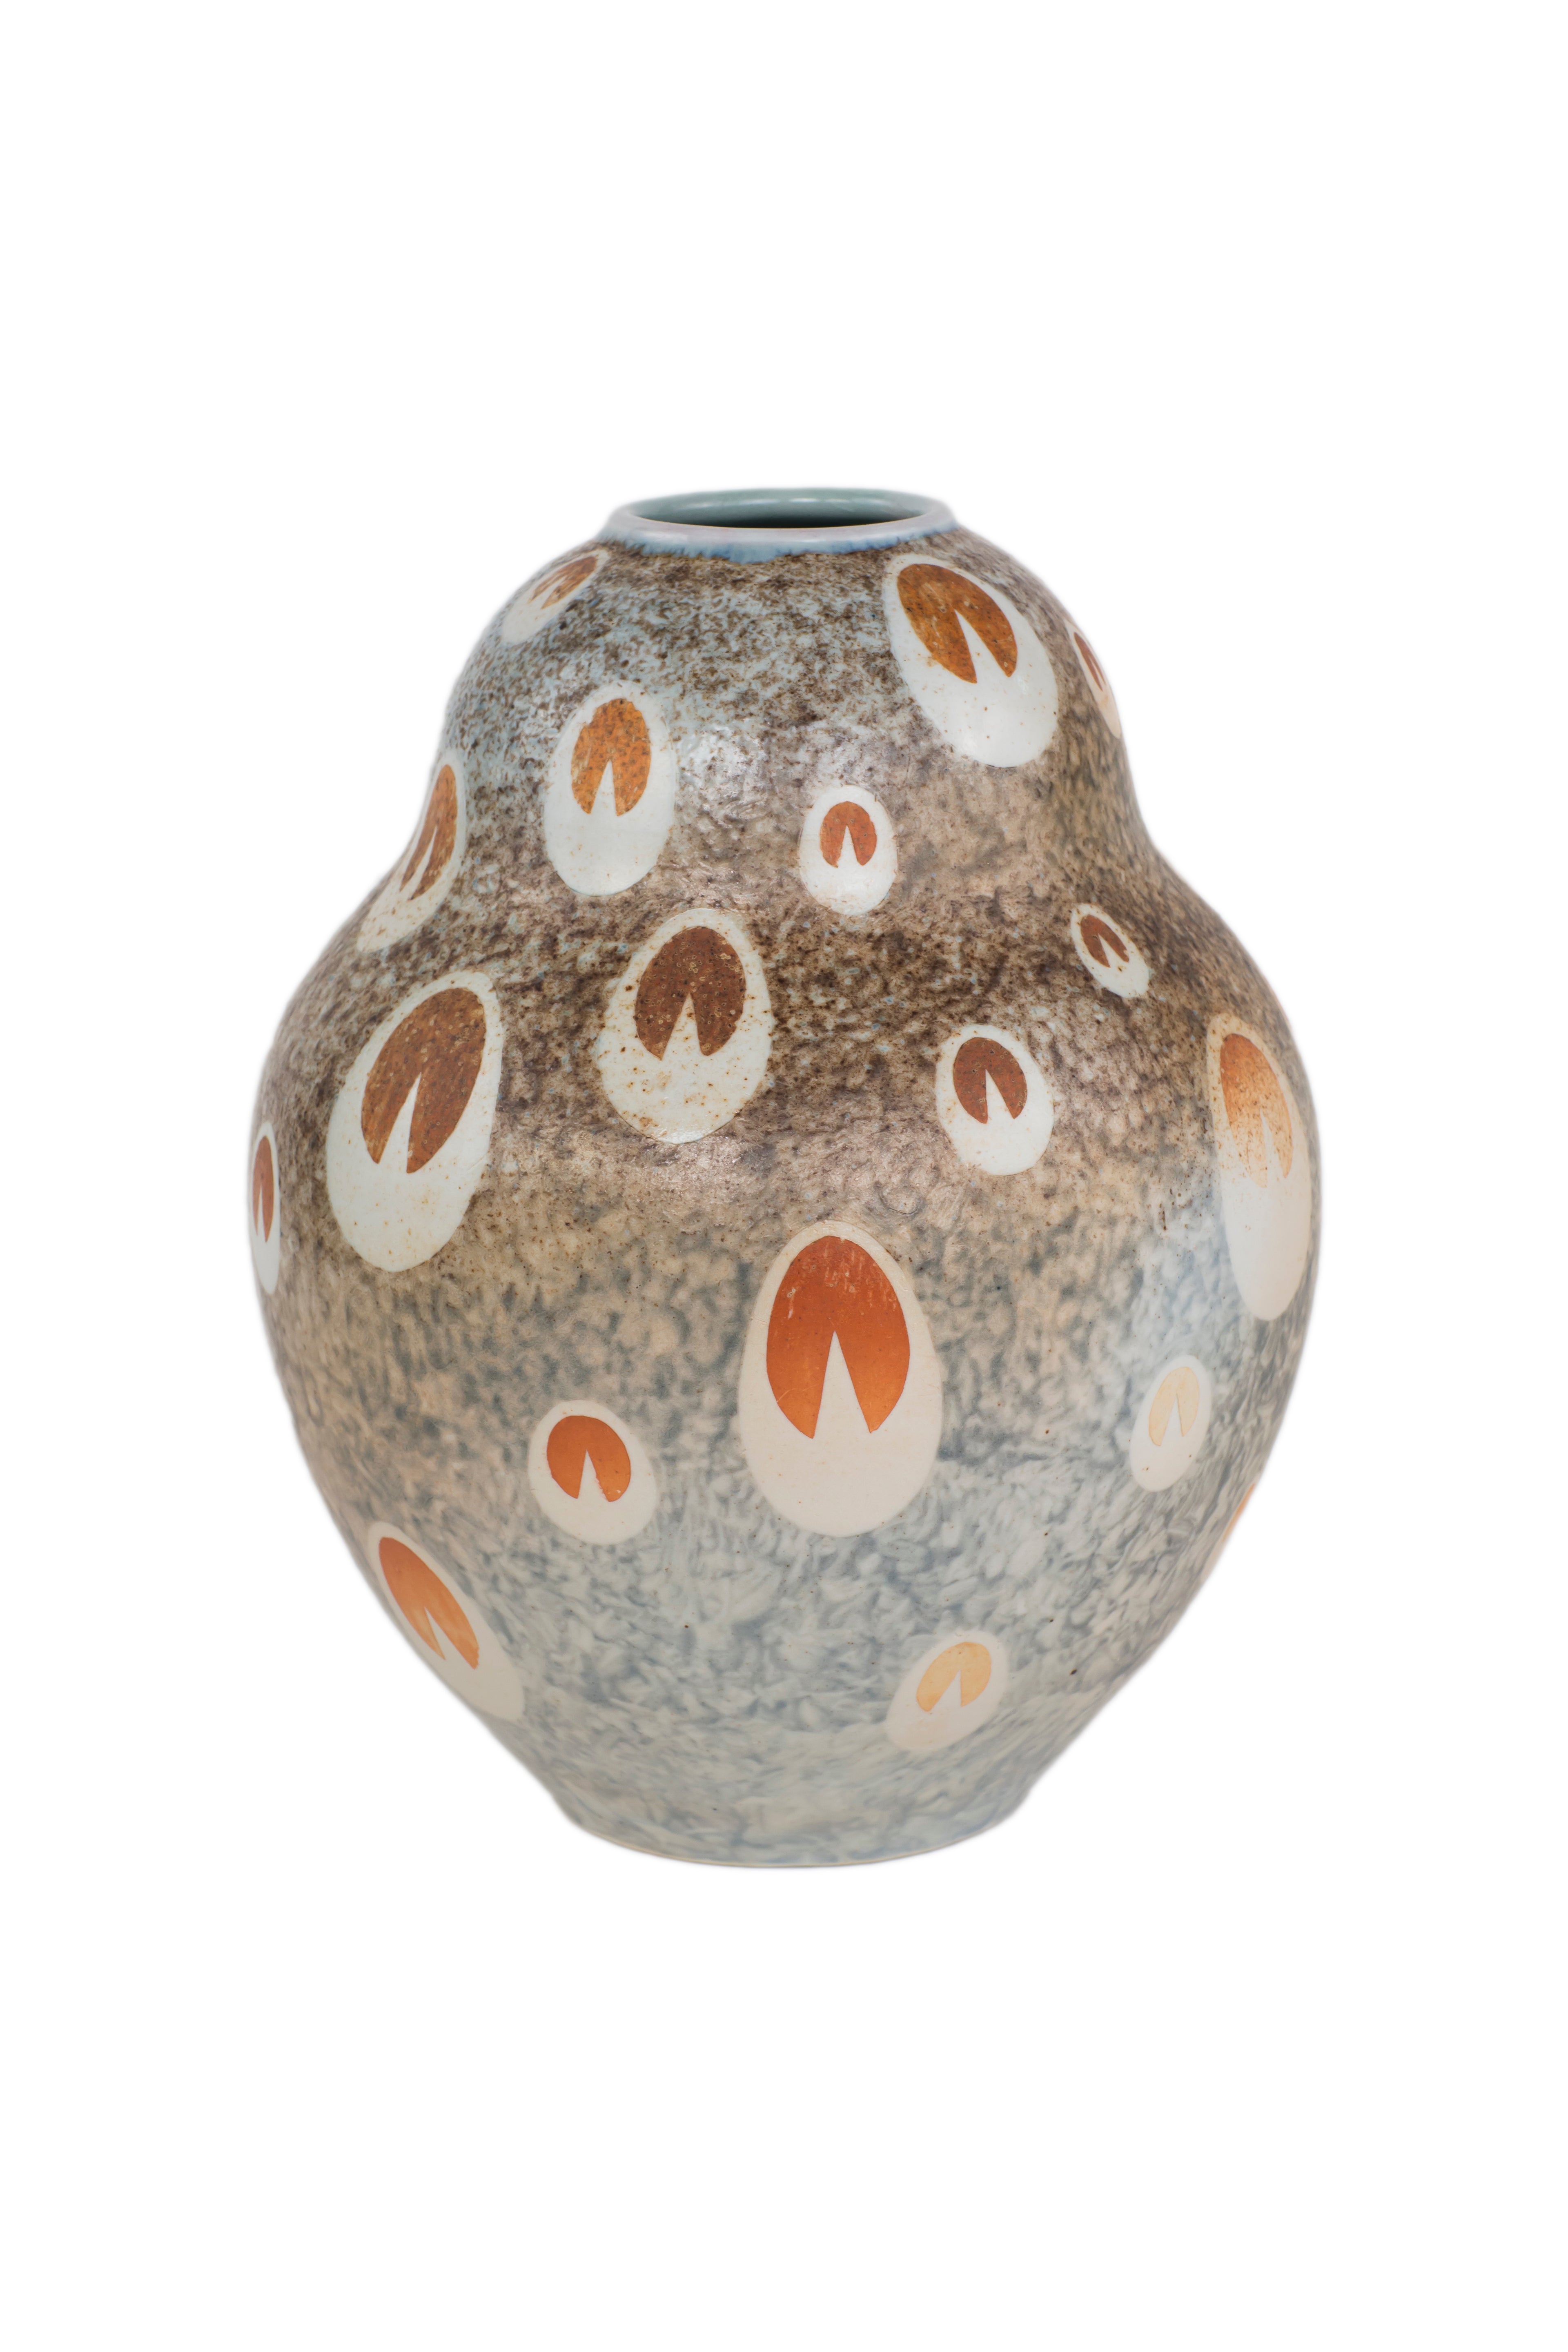 An Art Deco Style "Peacock" Porcelain Decorative Vase